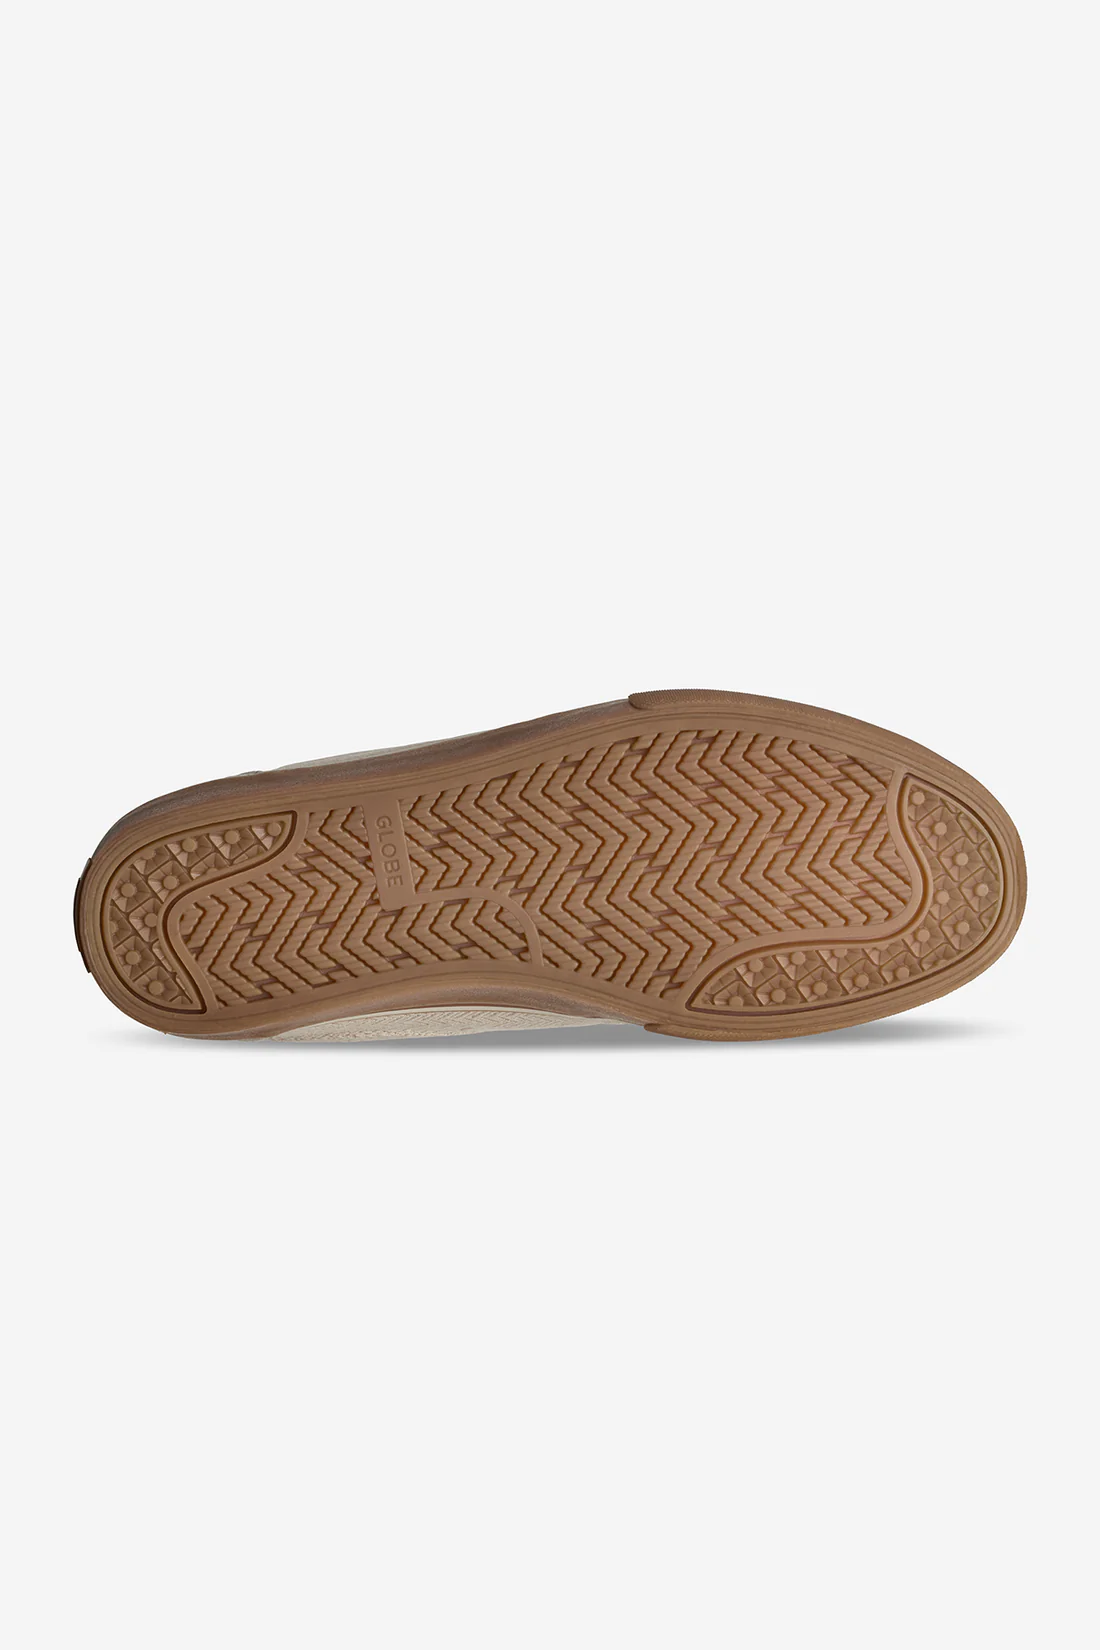 Globe Mahalo skateboard schoenen herringbone hemp